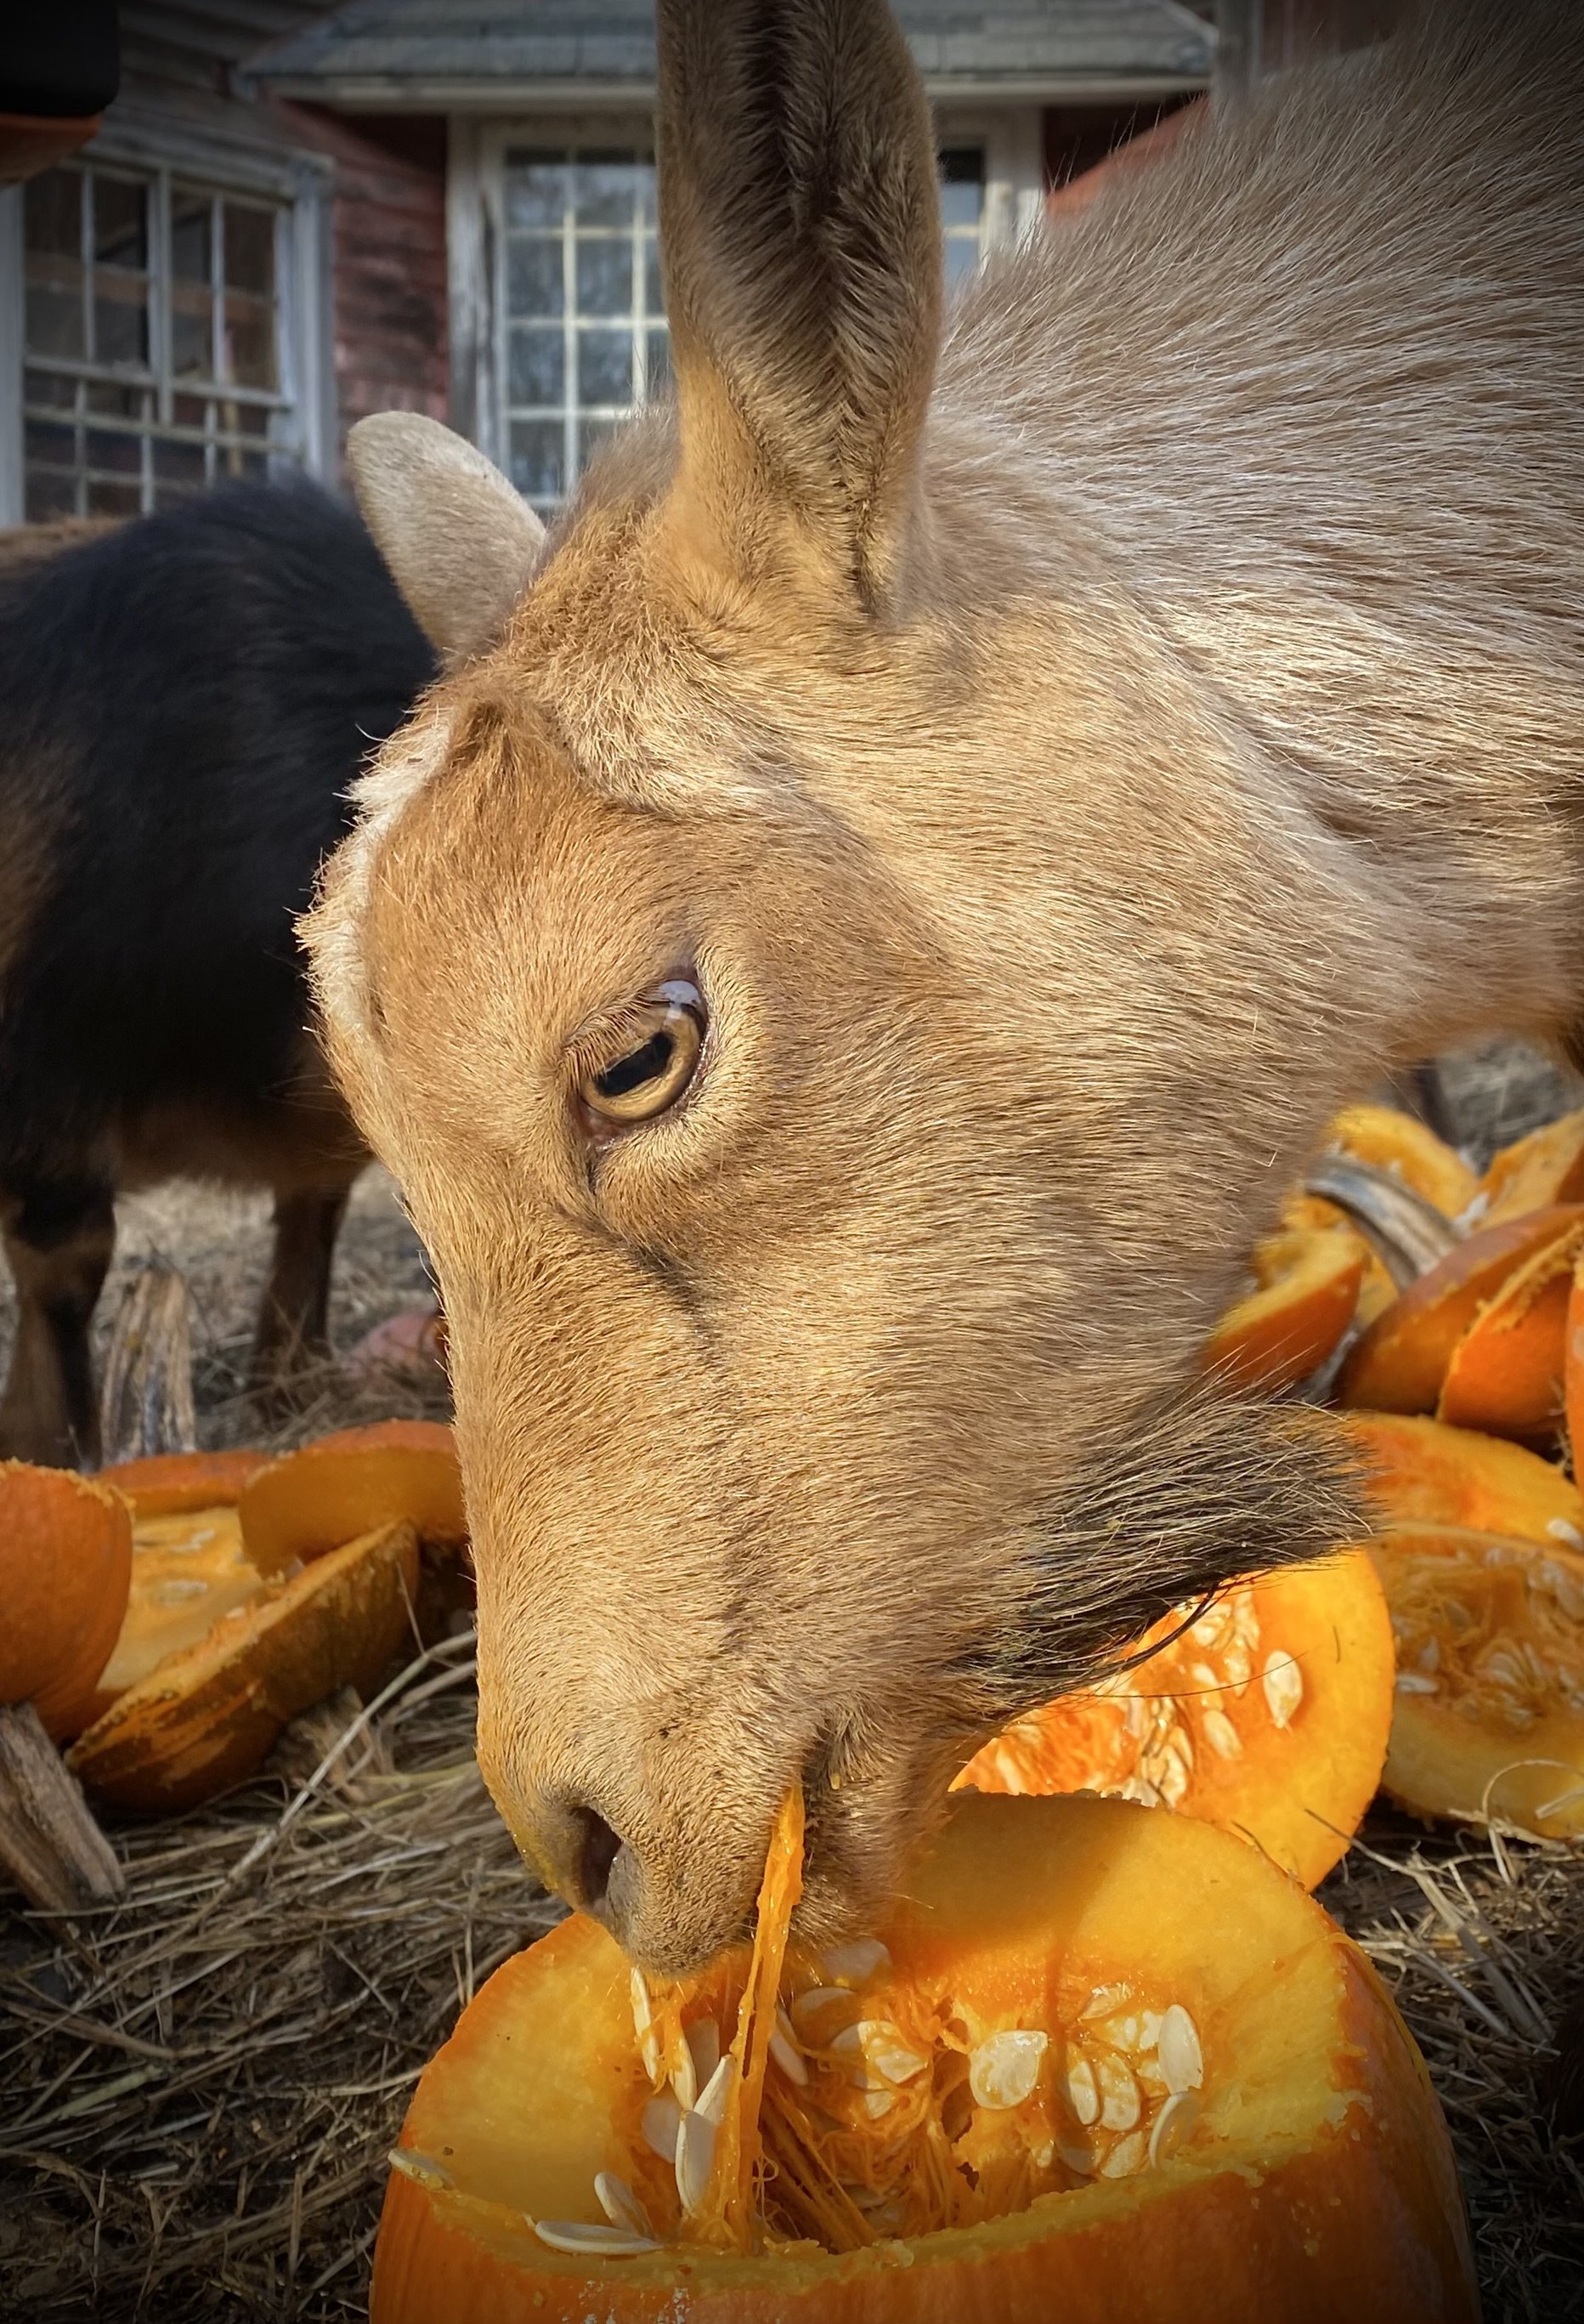 Blondi enjoying some pumpkin - November 2023